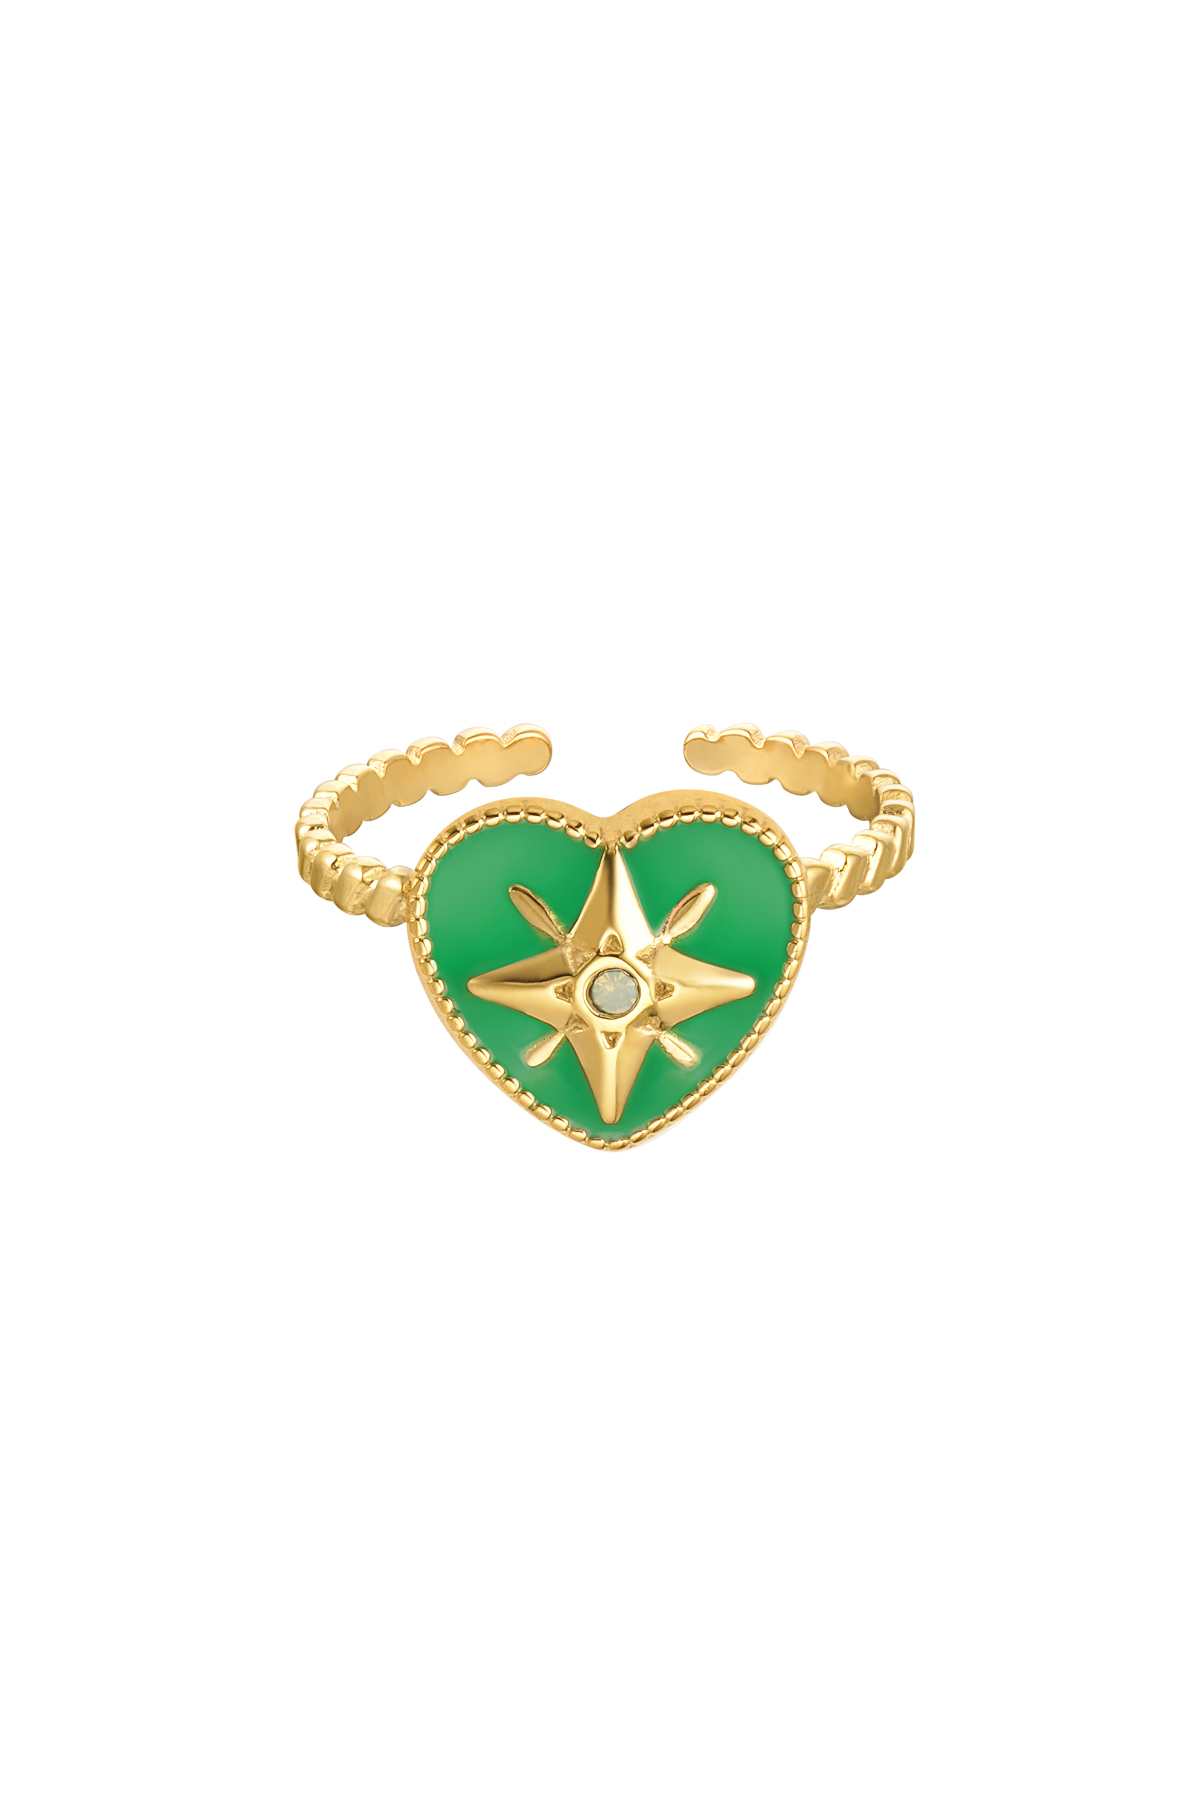 Ring farbiges Herz mit Stern, emailliert grün - gold h5 